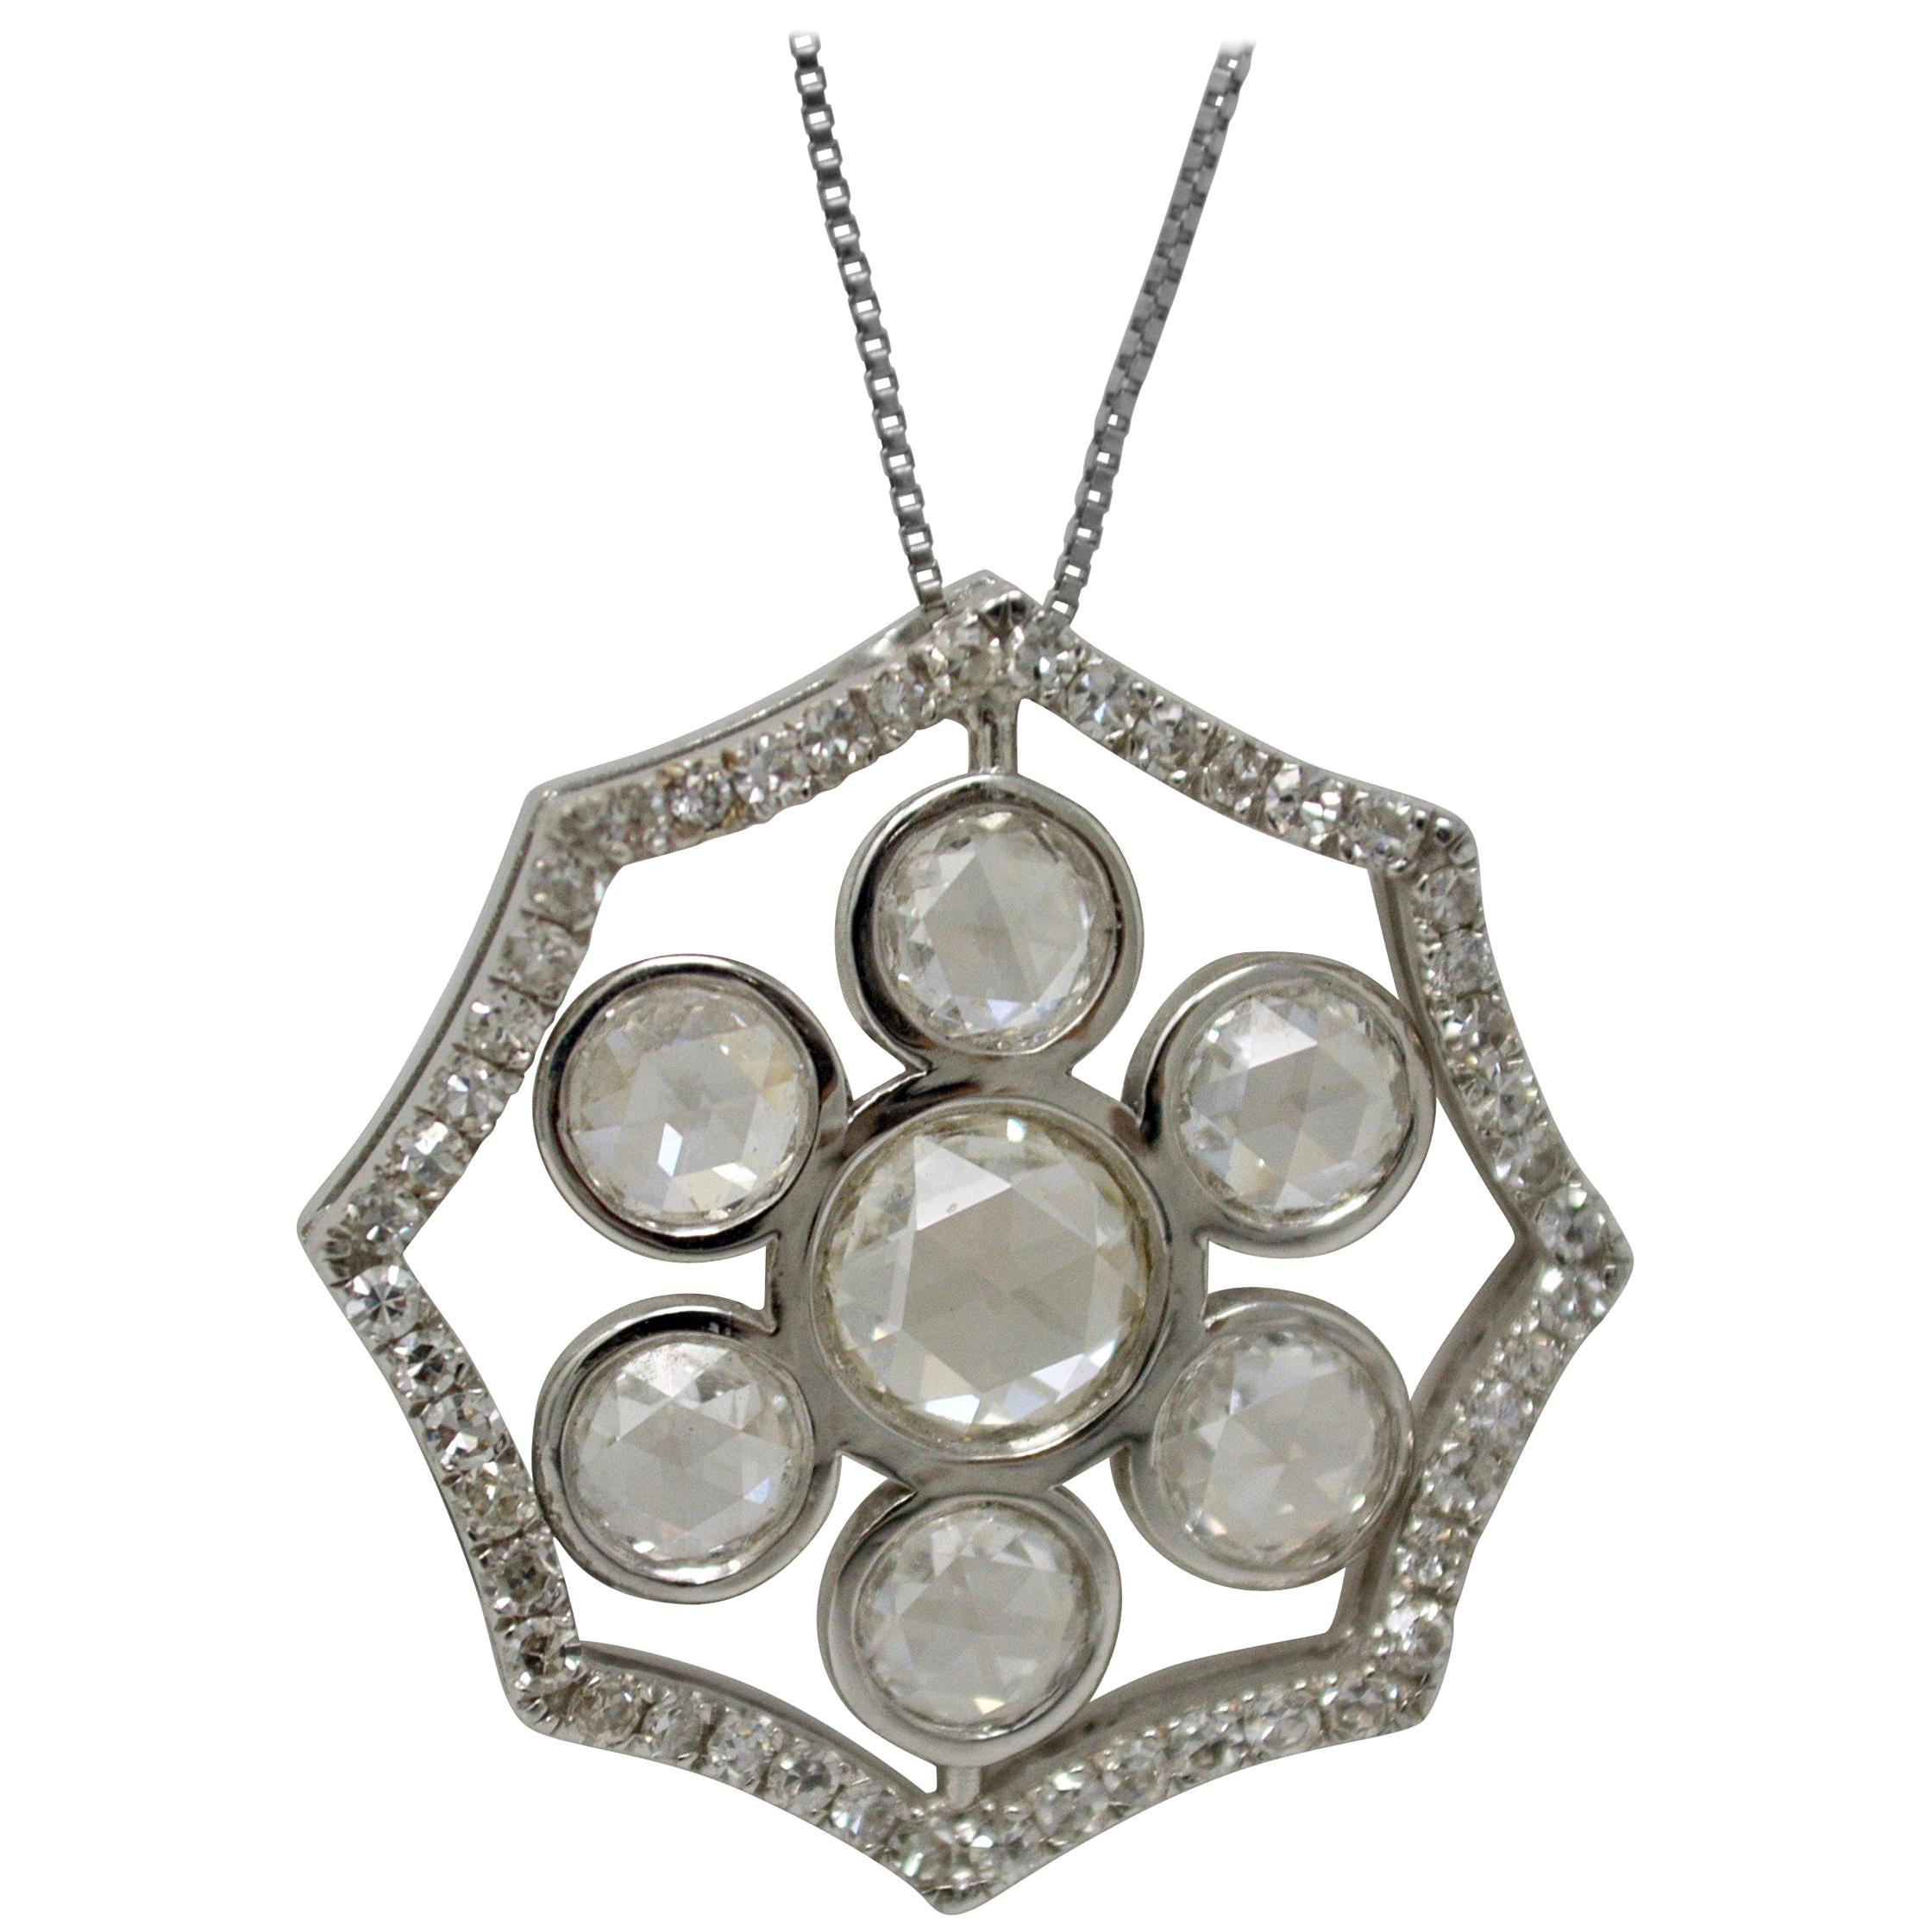 2.51 Carat White Rose Cut Diamond Necklace in 18 Karat White Gold